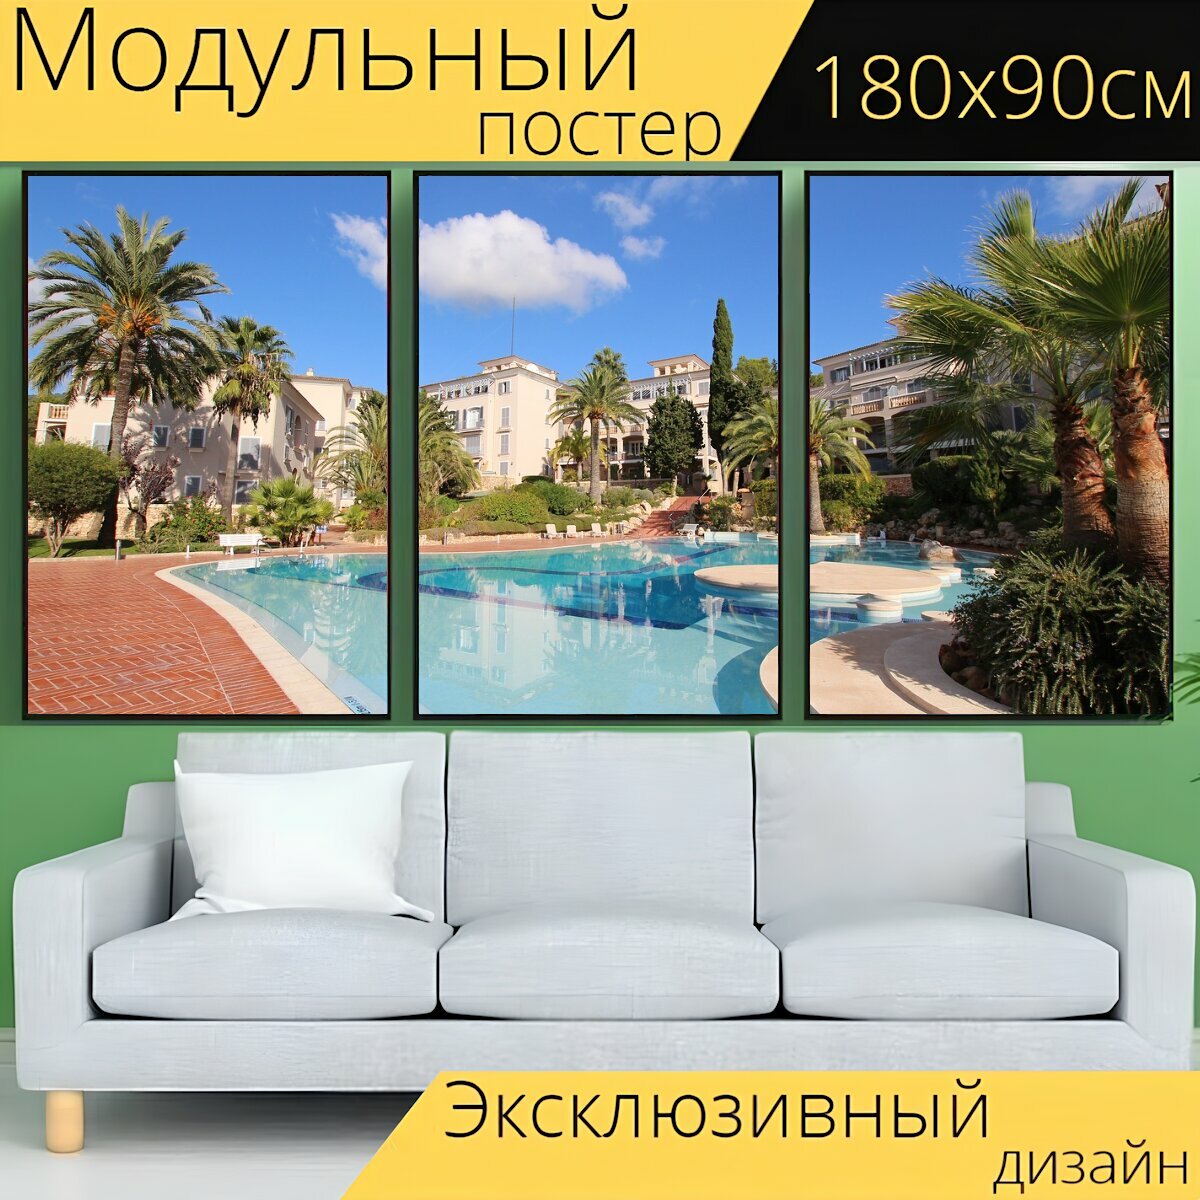 Модульный постер "Дом отдыха, средиземноморской жизни, квартира" 180 x 90 см. для интерьера